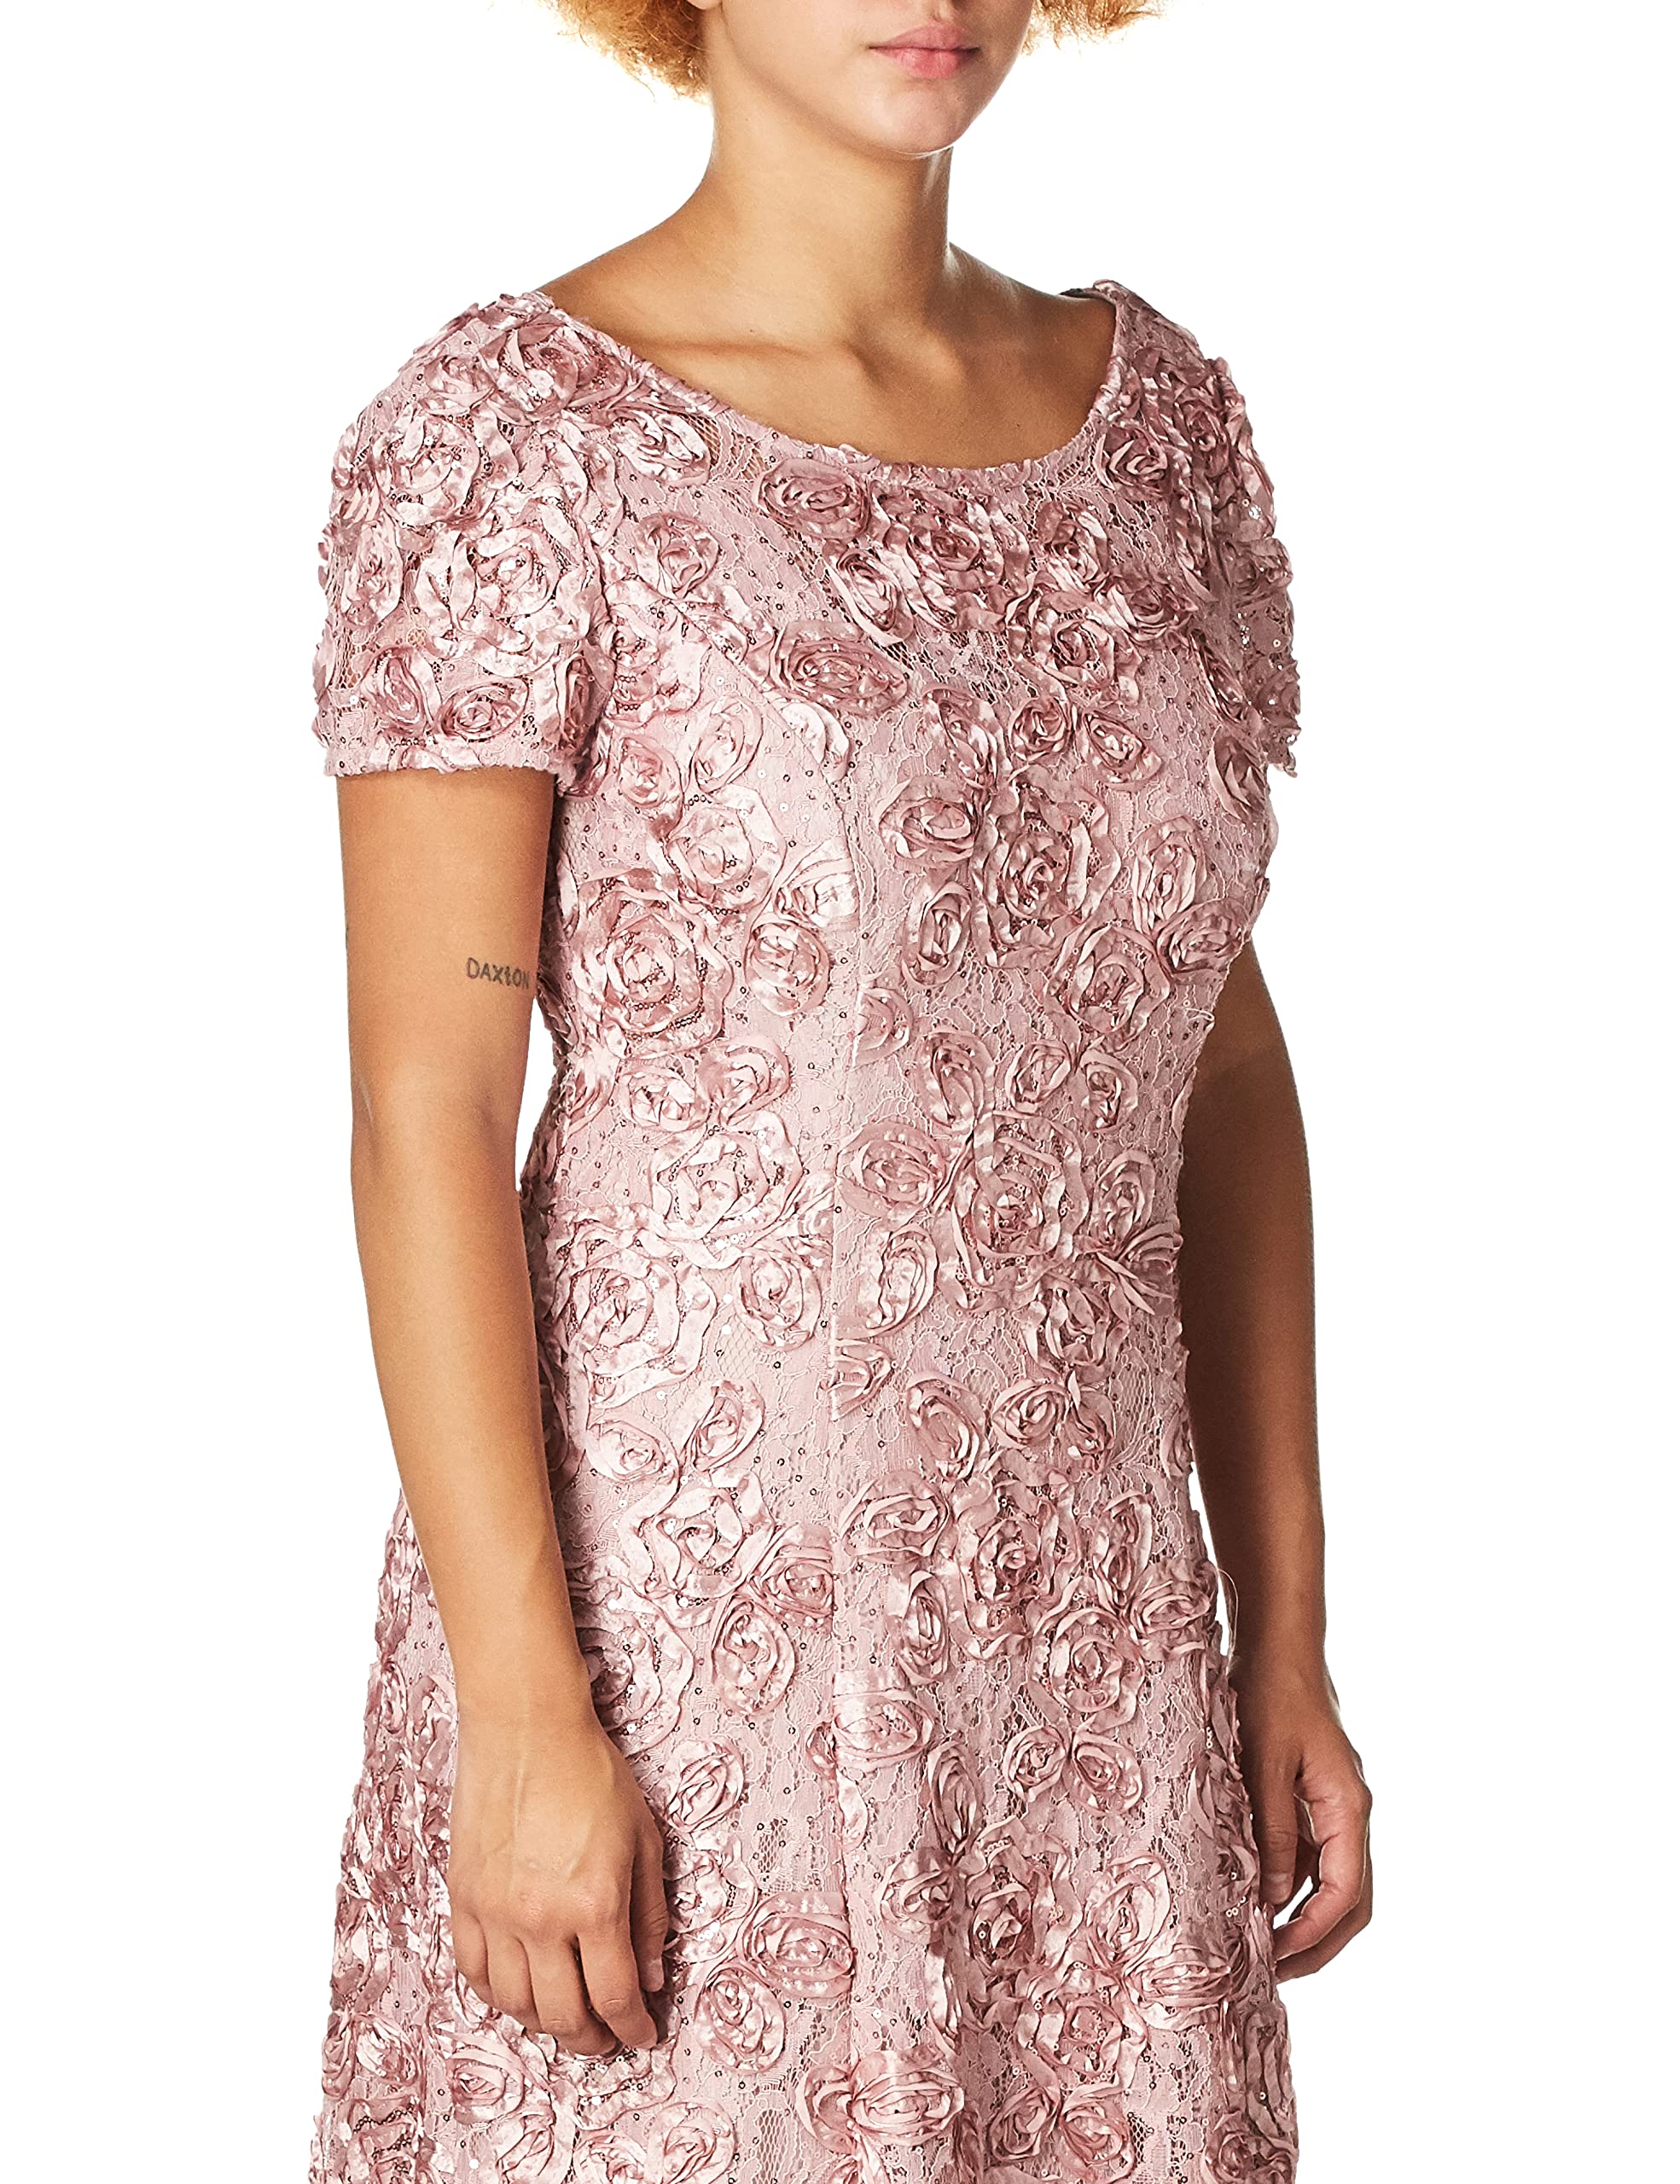 Alex Evenings Women's Long Rosette Lace Cap Sleeve Gown